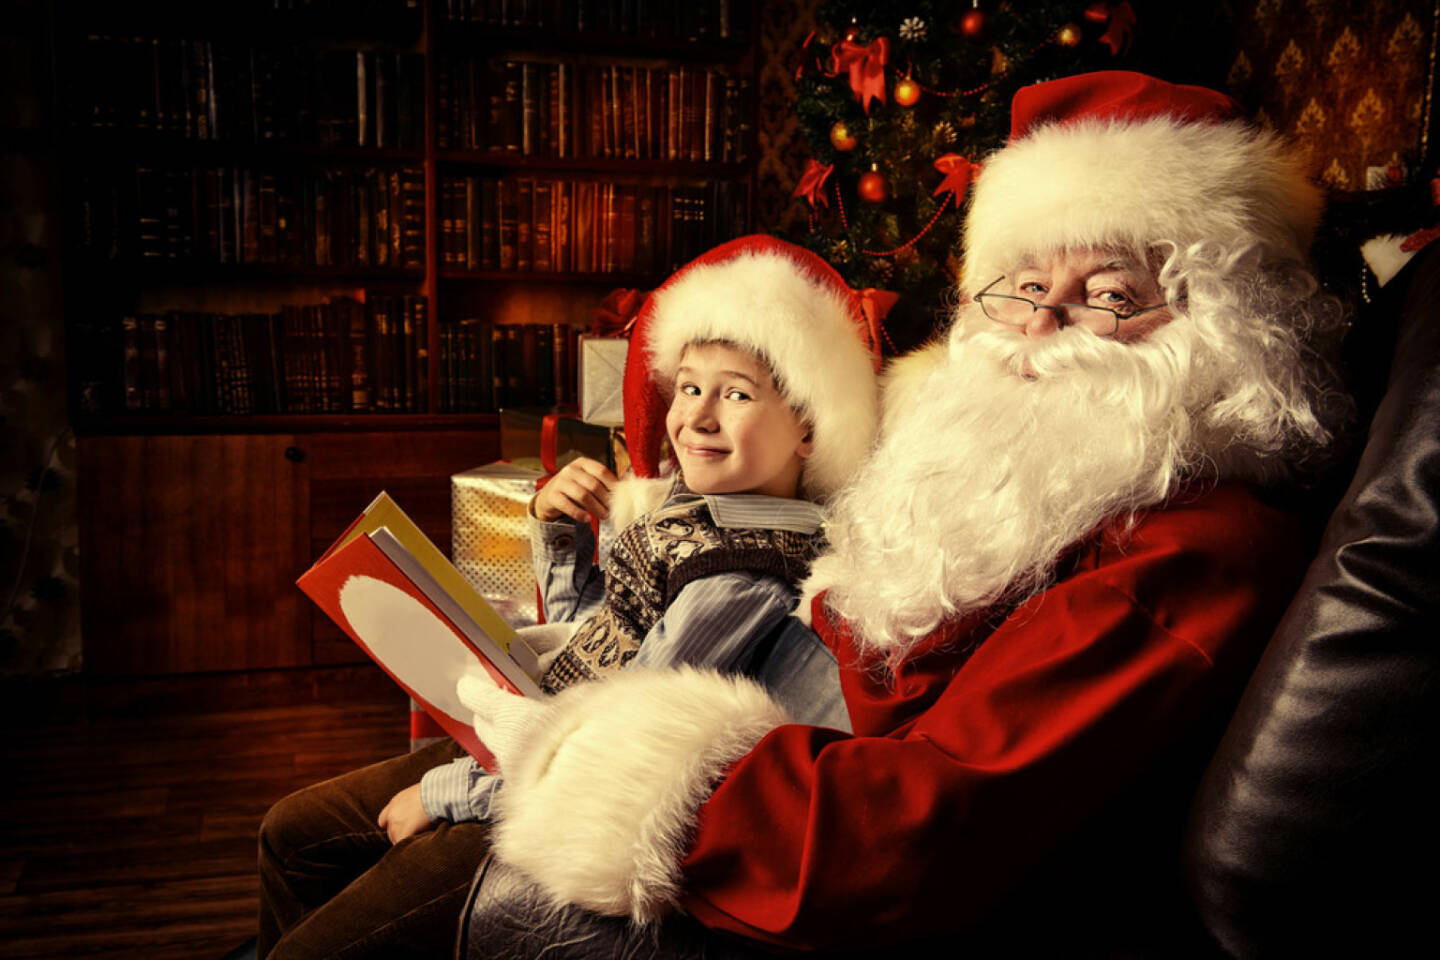 Santa Claus, Weihnachten, Nikolo, http://www.shutterstock.com/de/s/santa+claus+mit+kind/search.html